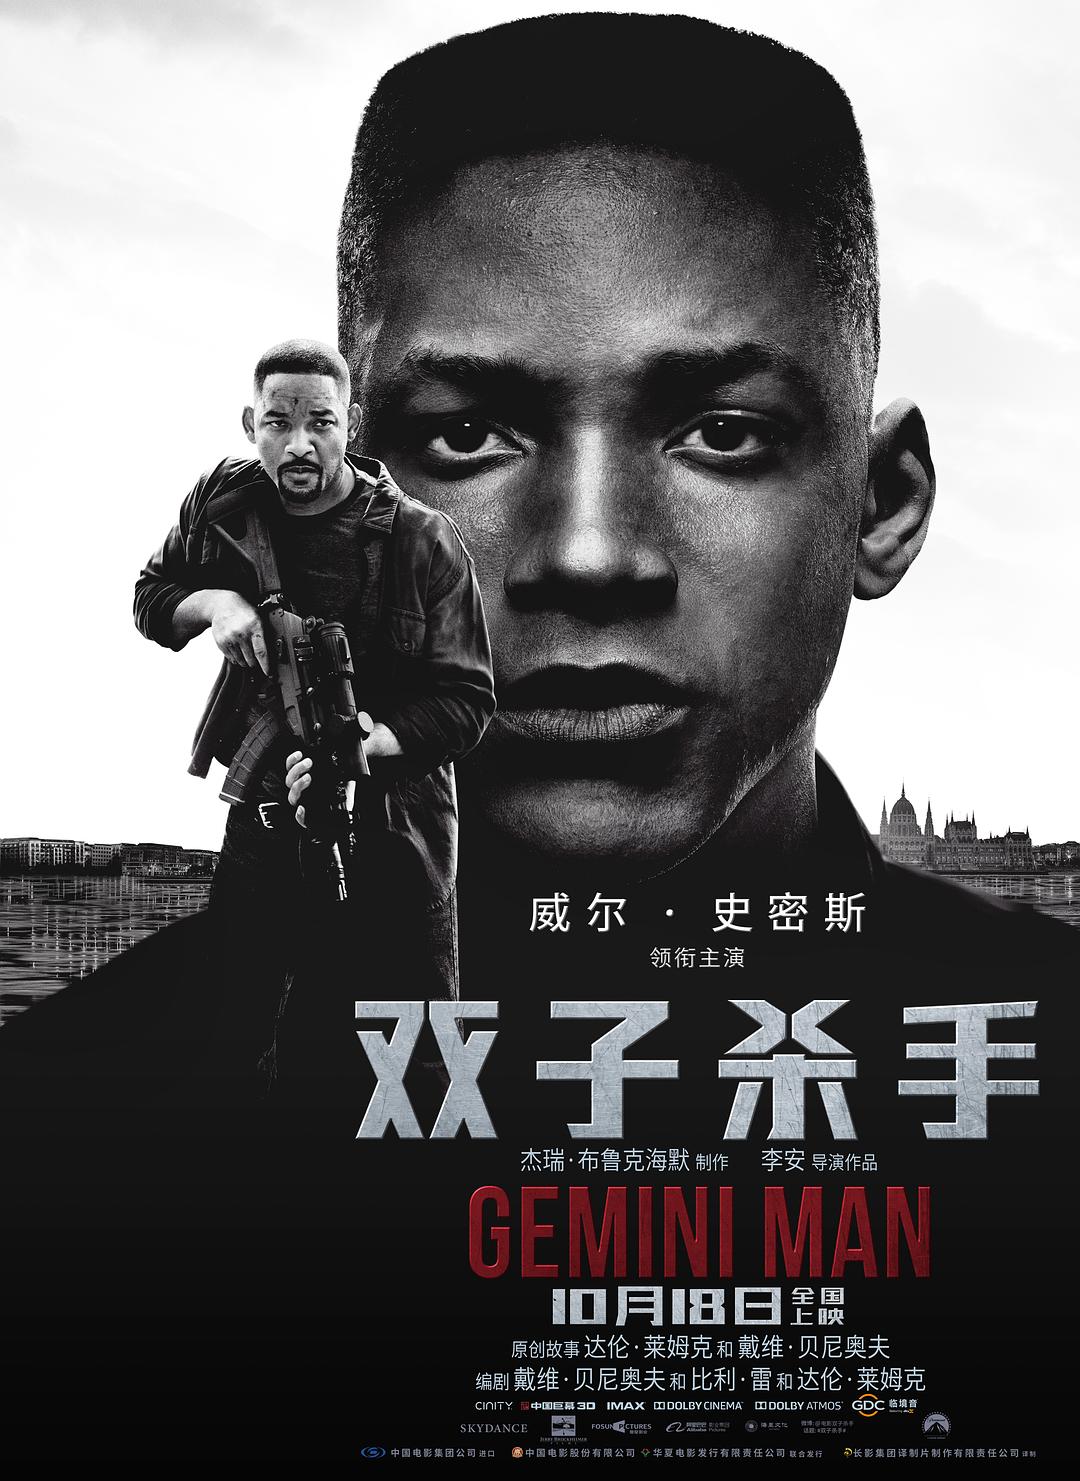 双子杀手/双子使命:叠影危机 Gemini.Man.2019.720p.BluRay.x264-SPARKS 4.39GB-1.png